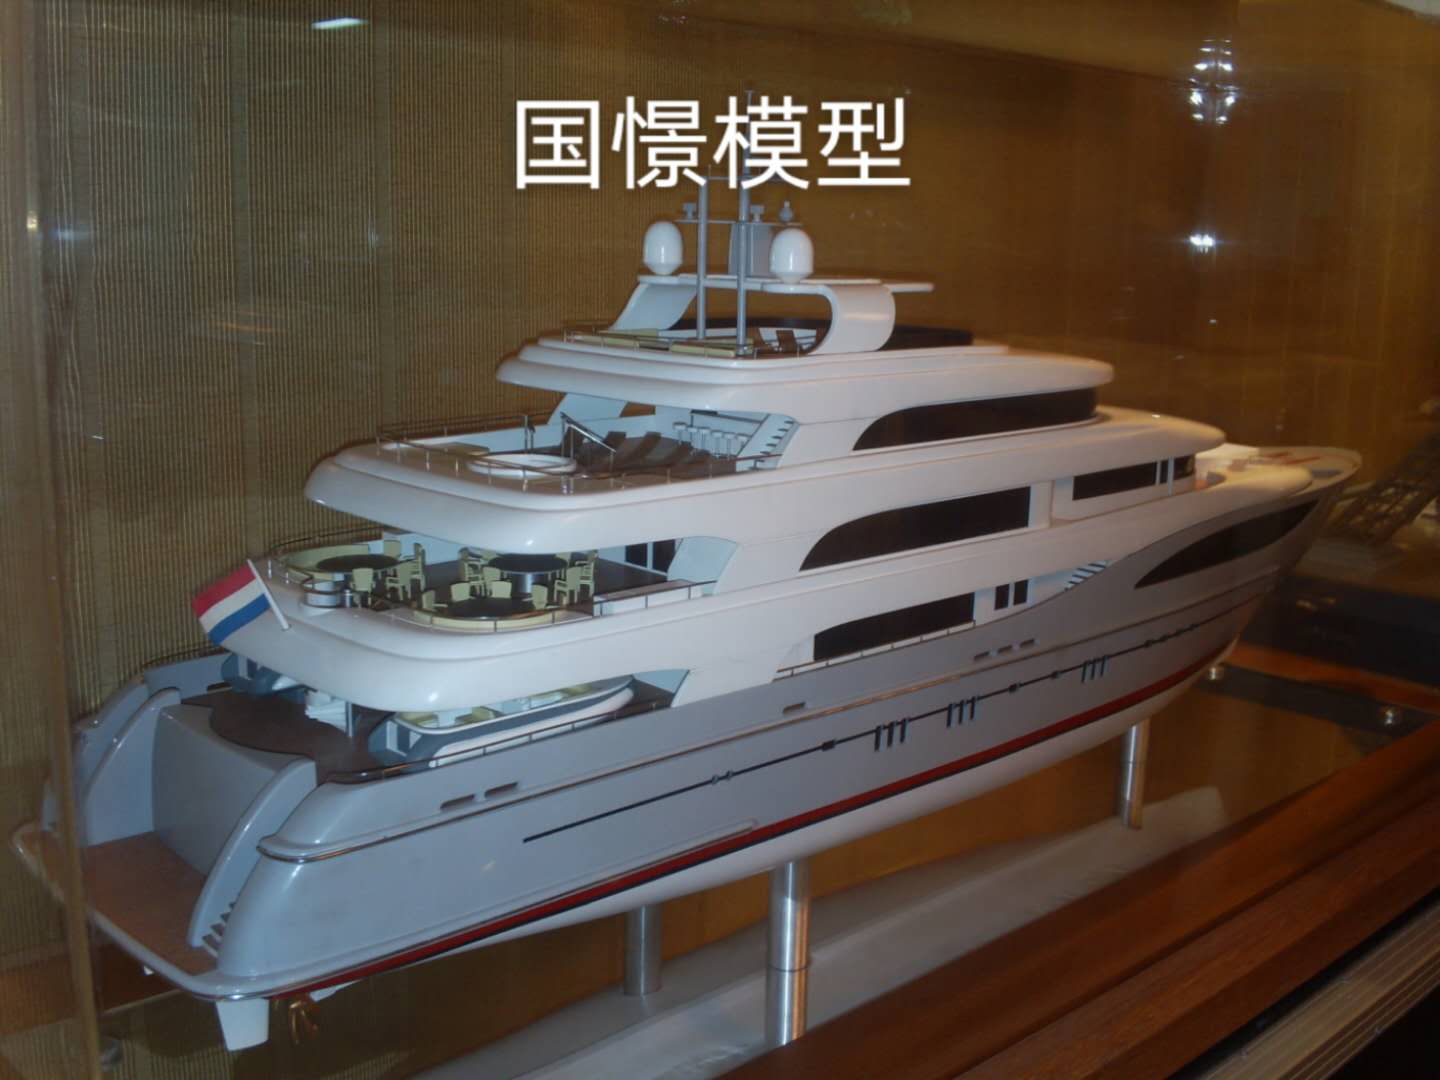 故城县船舶模型